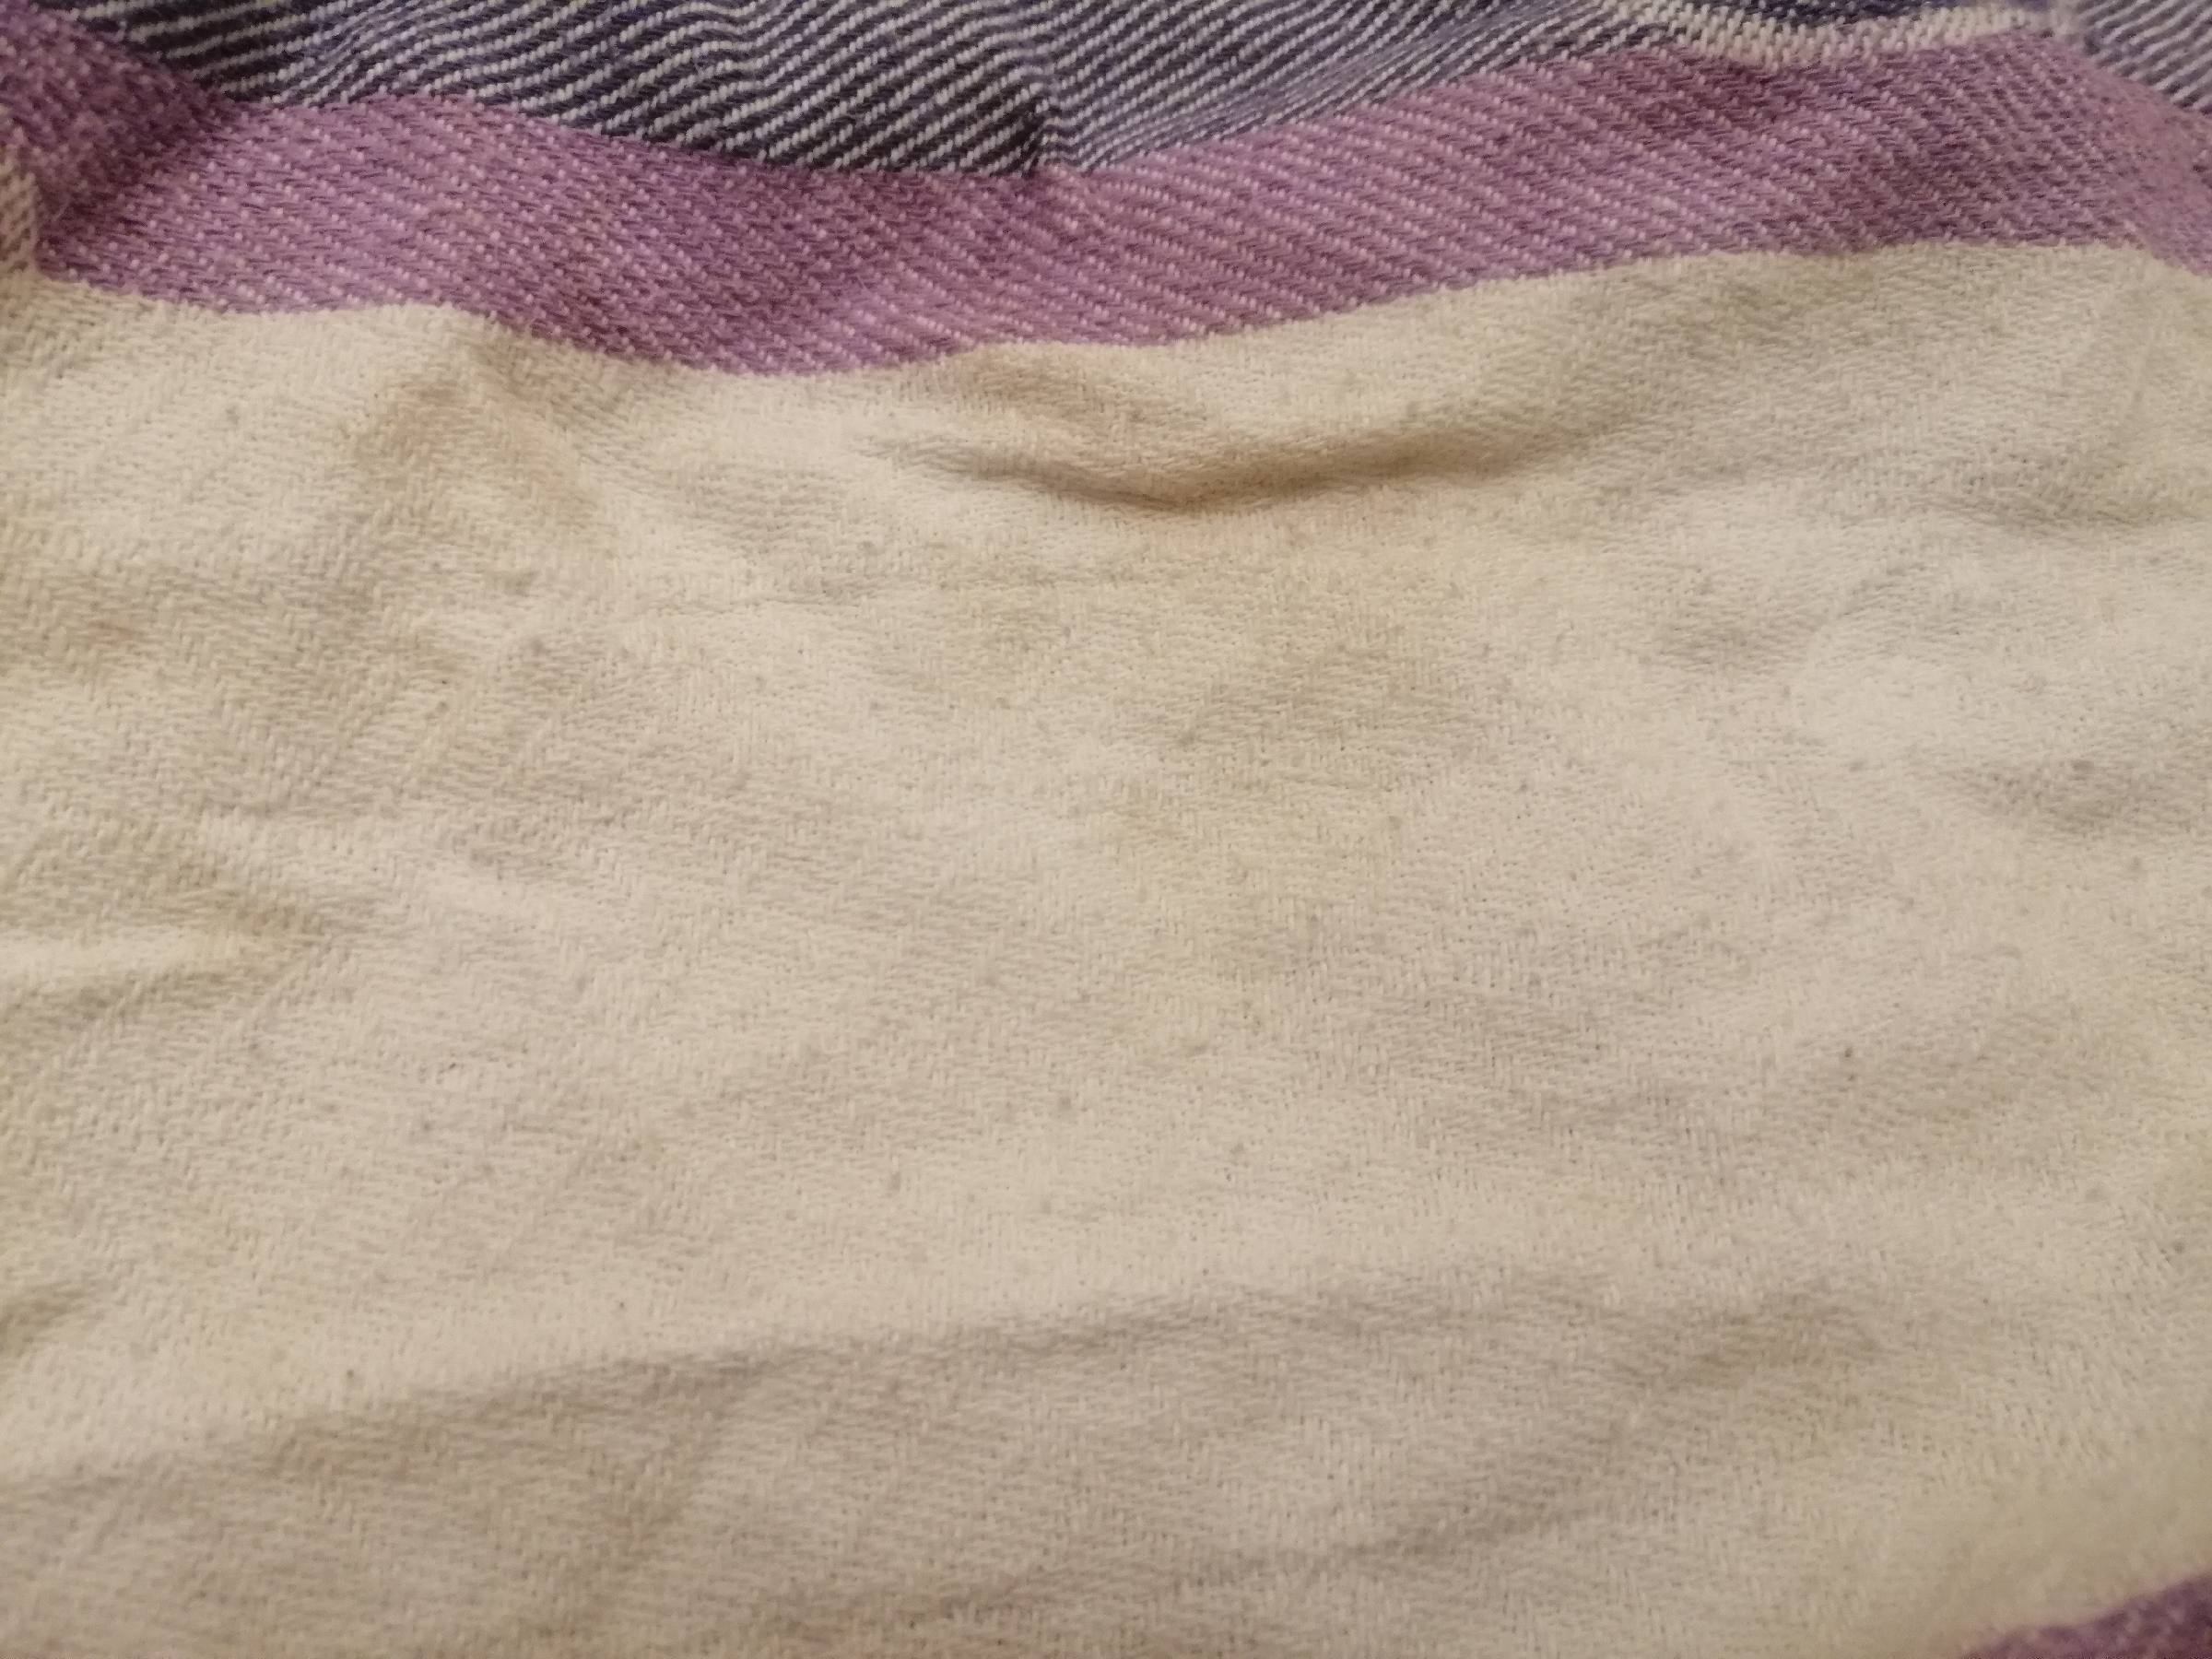 Без отбеливателей и пятновыводителей мои кухонные полотенца идеально белоснежные. Даже старые полотенца станут лучше новых3